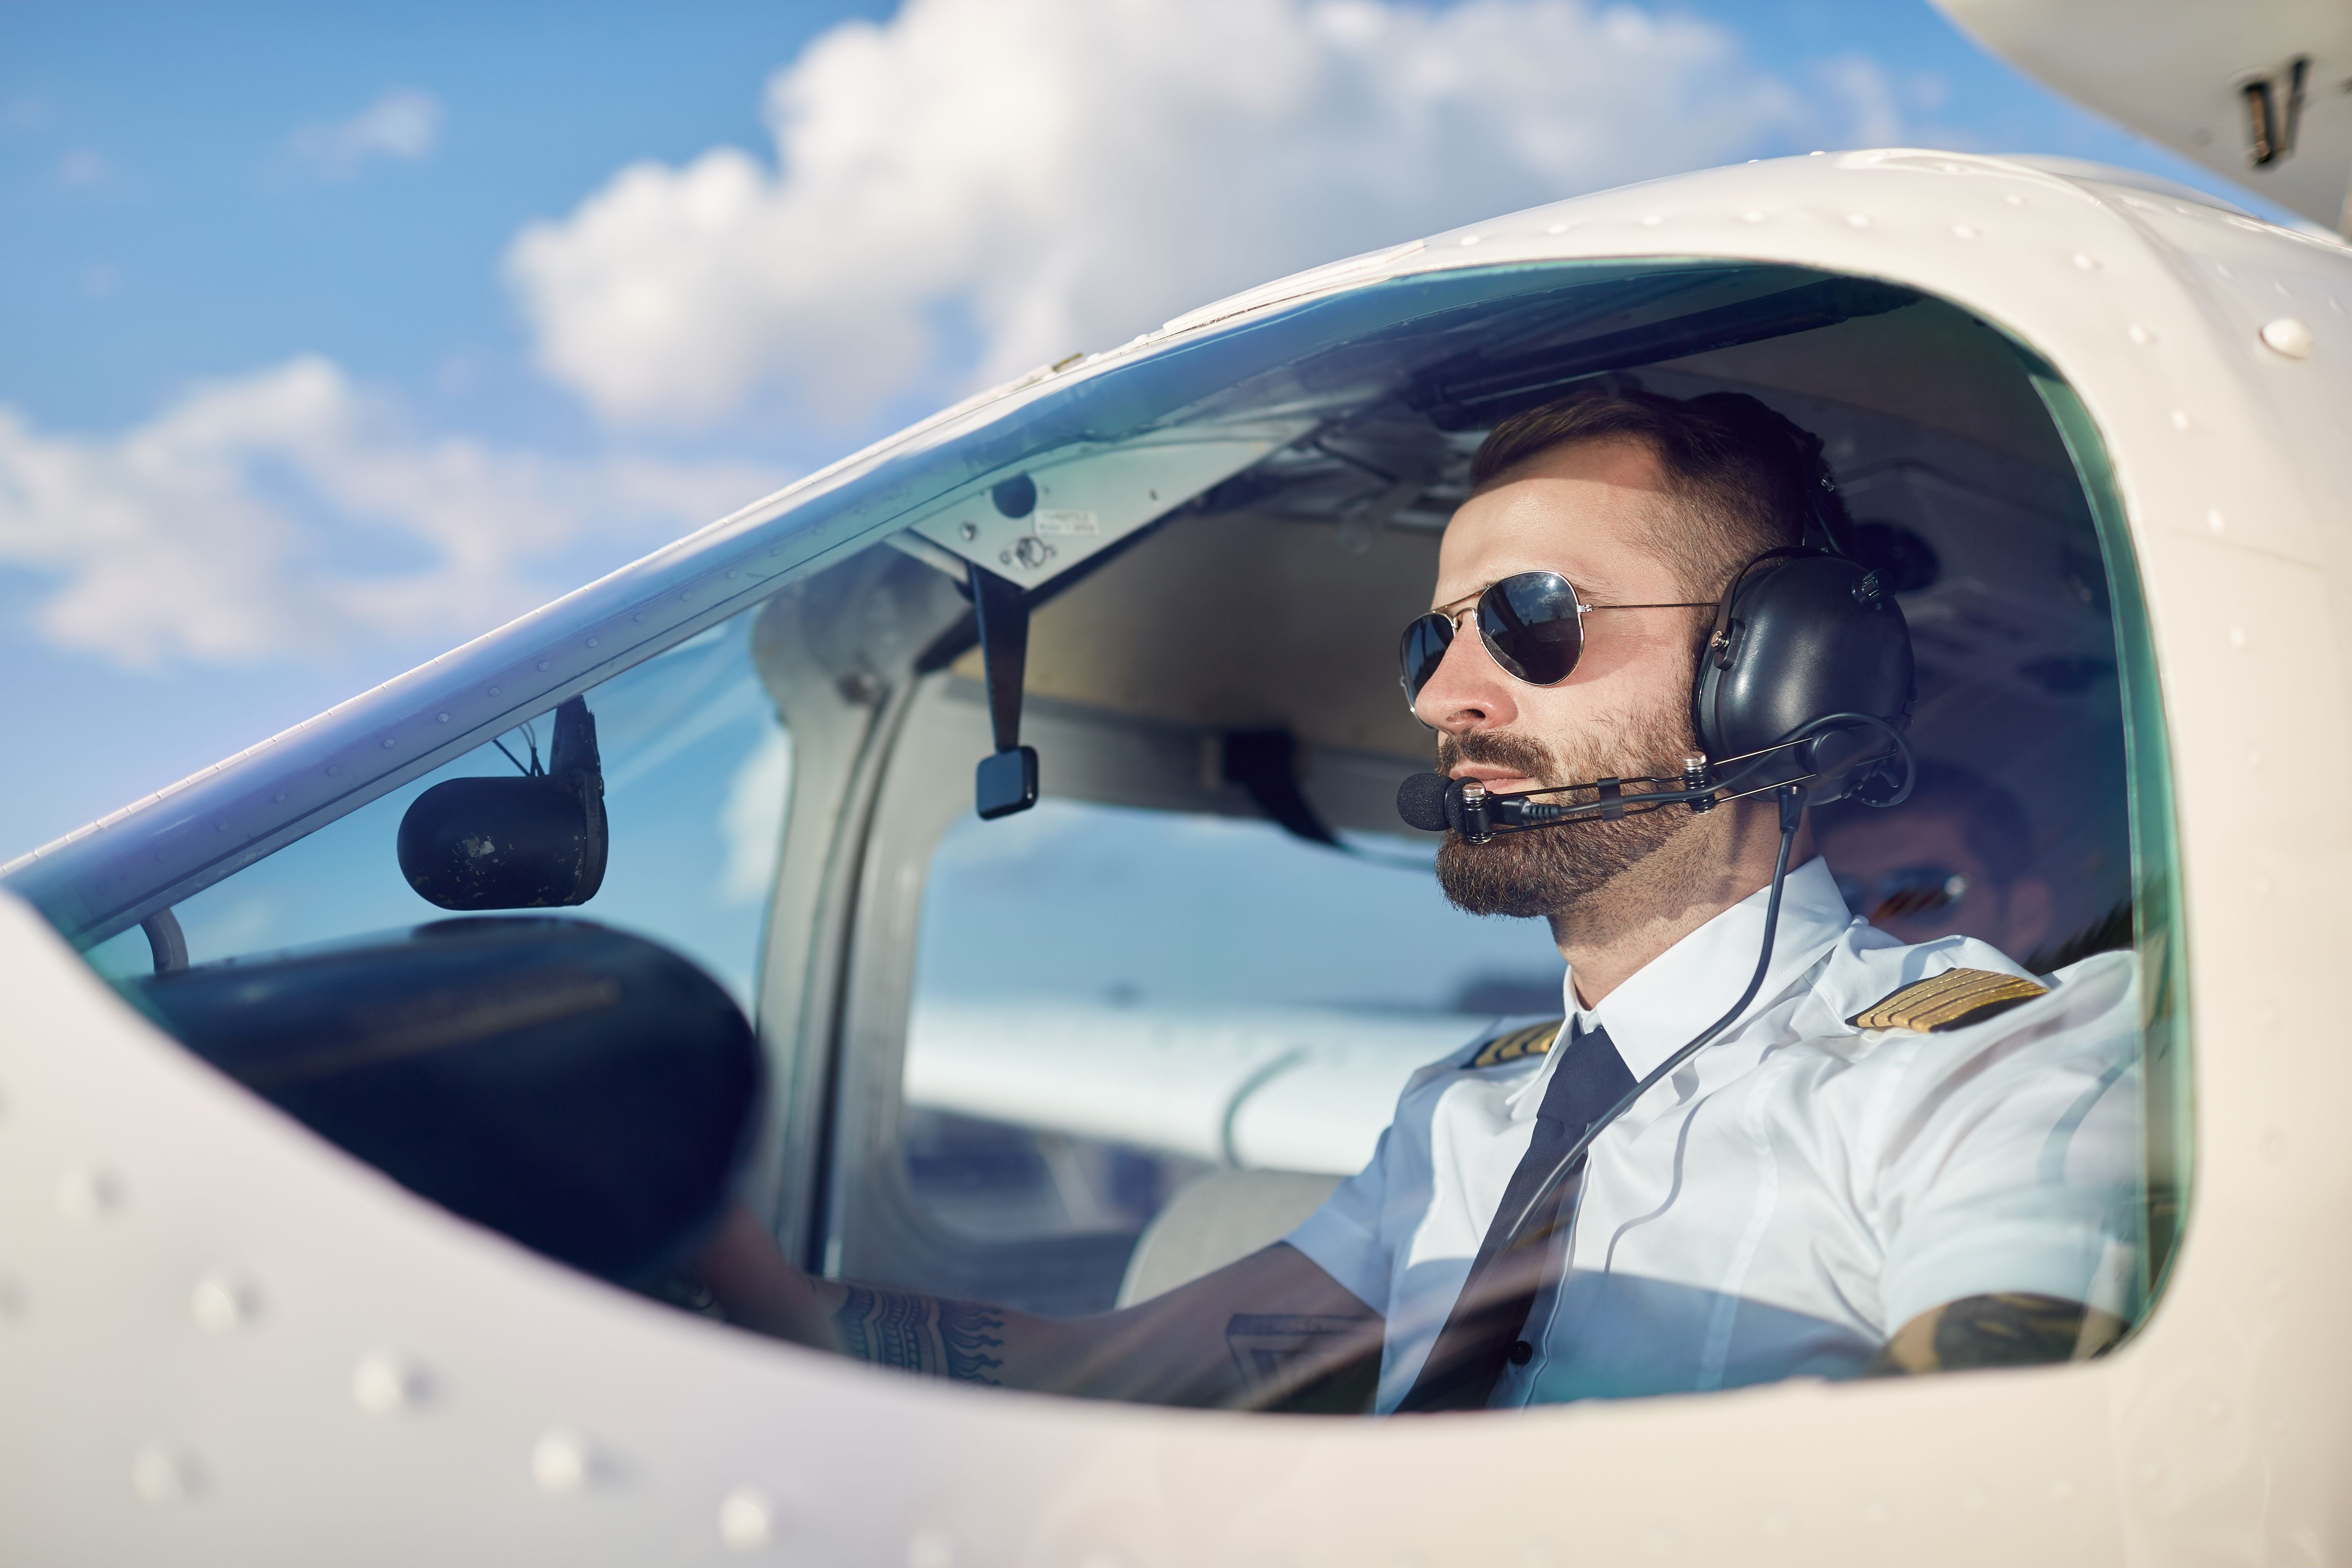 Pilot with a beard